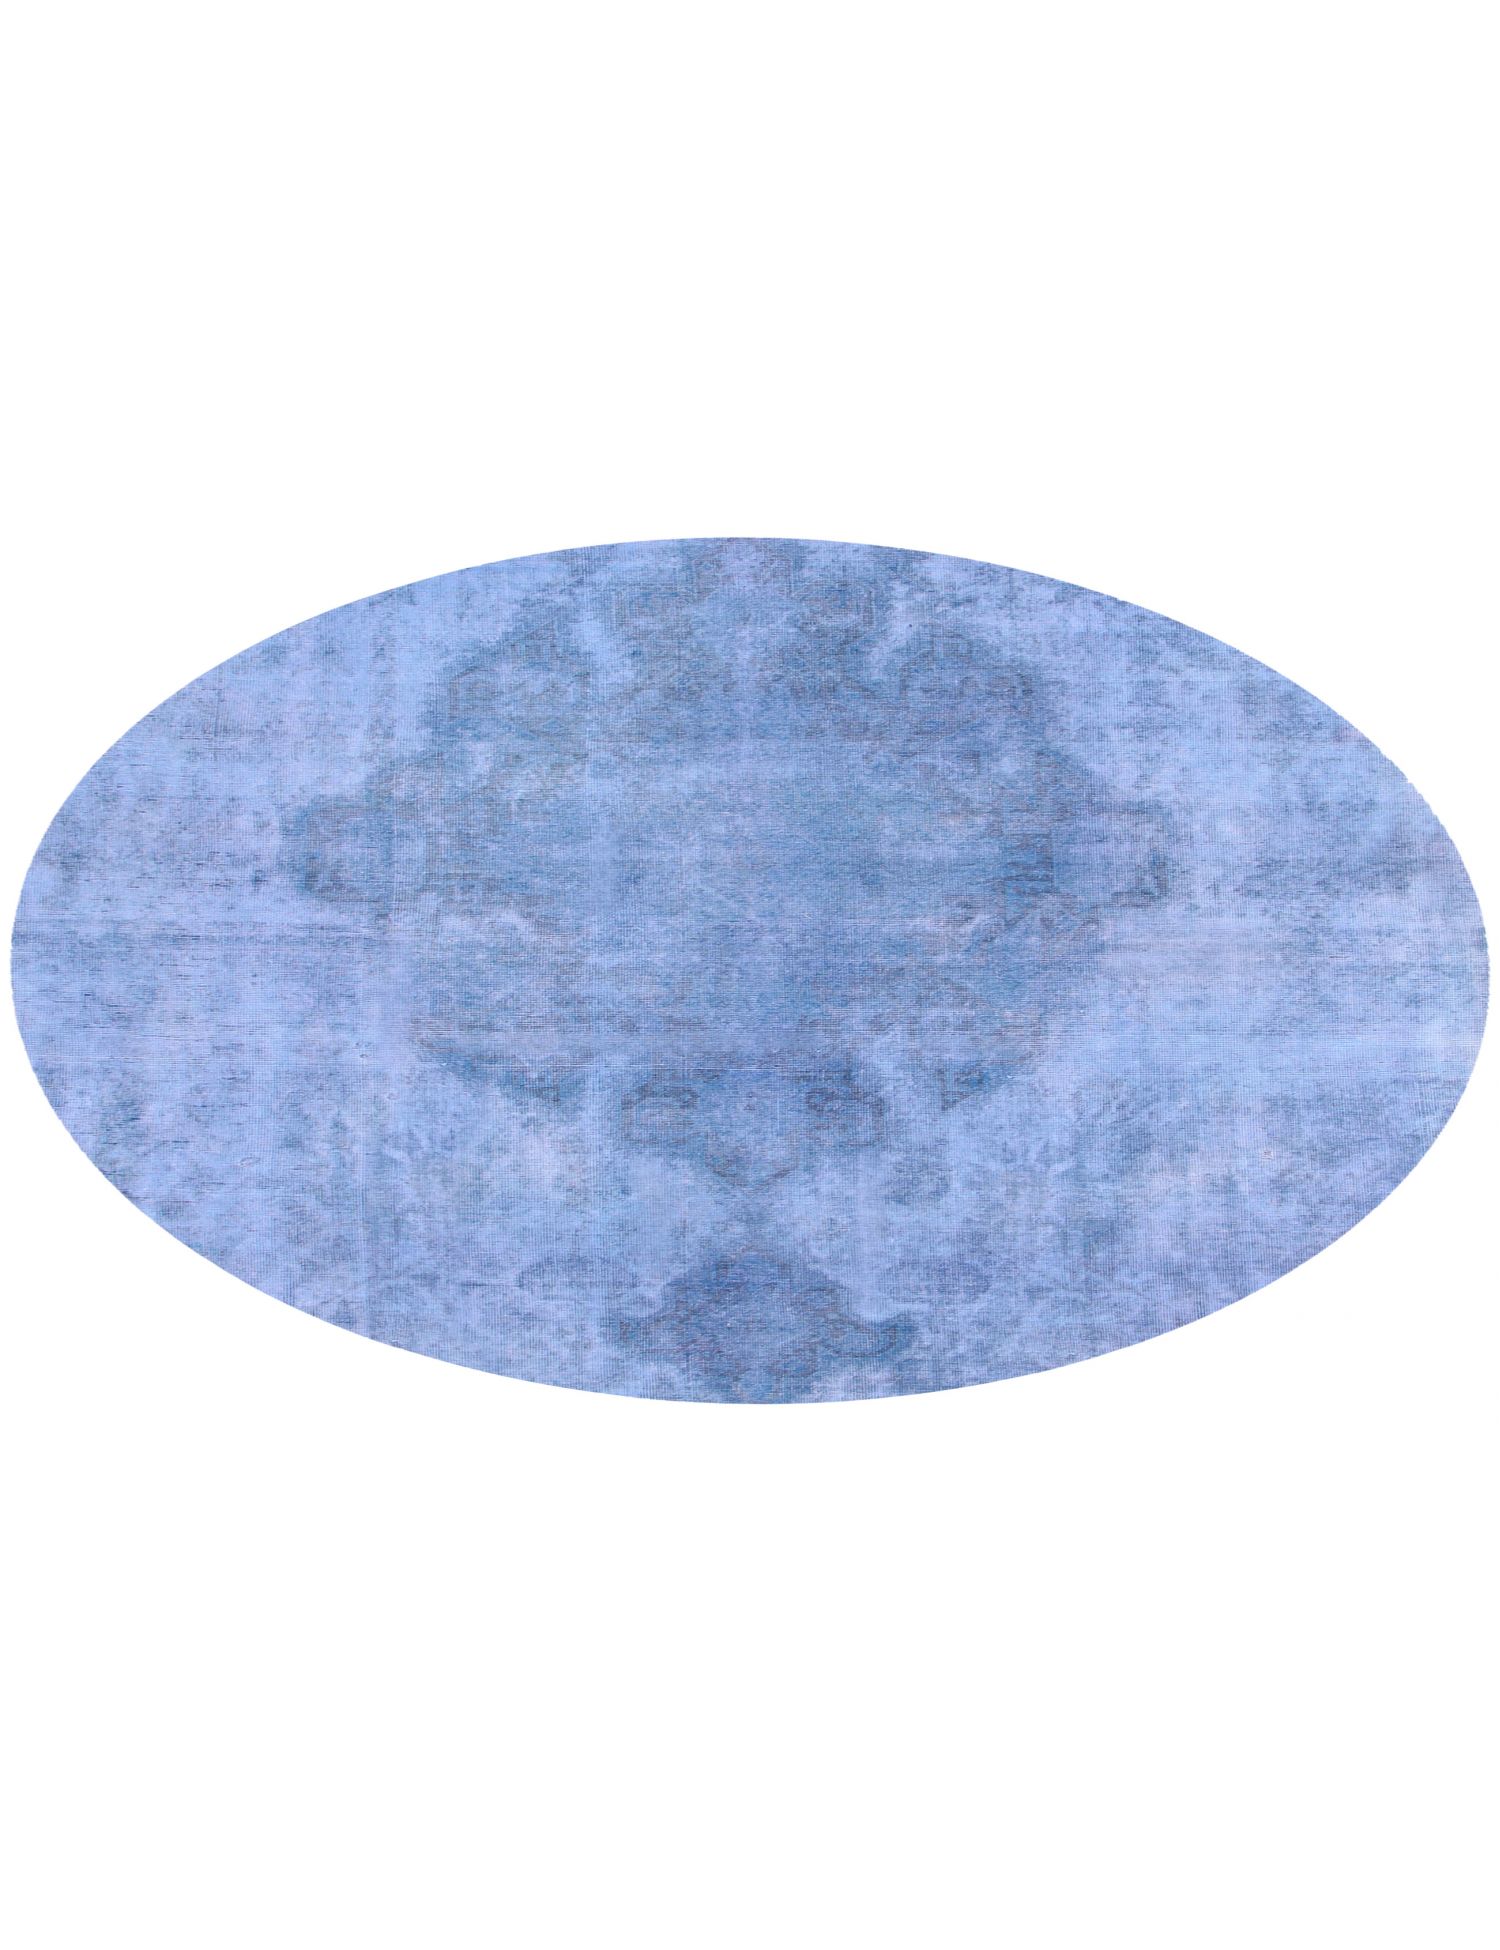 Rund  Vintage Teppich  blau <br/>200 x 200 cm